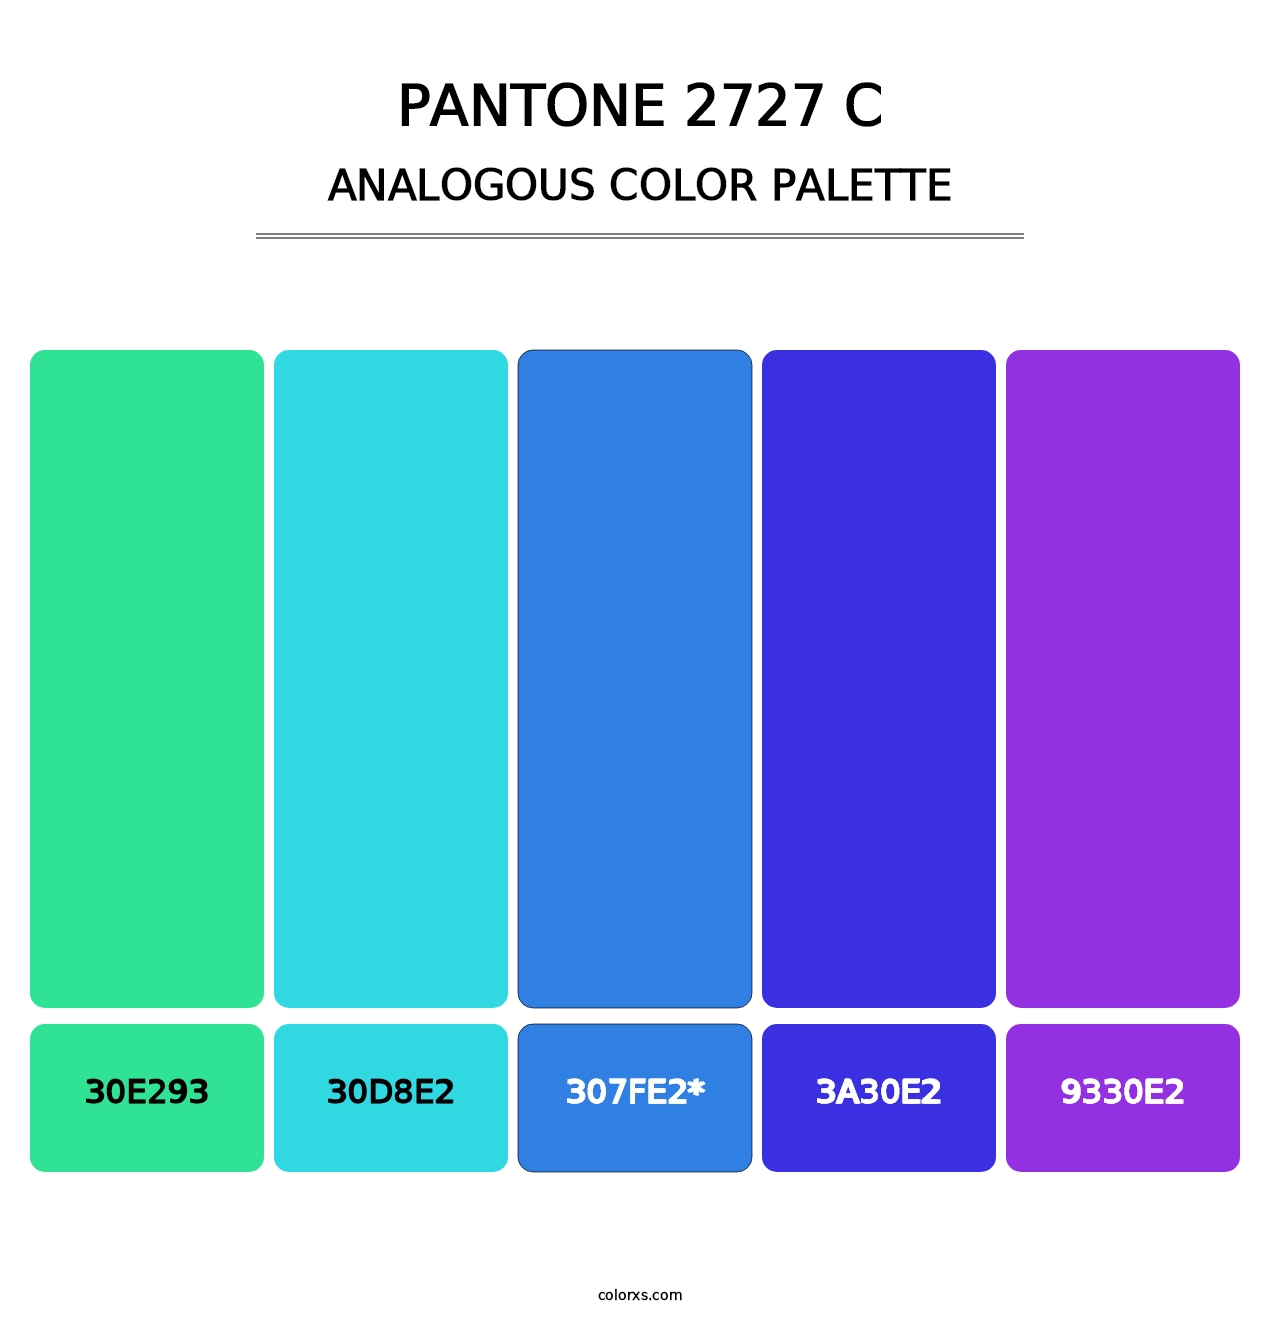 PANTONE 2727 C - Analogous Color Palette